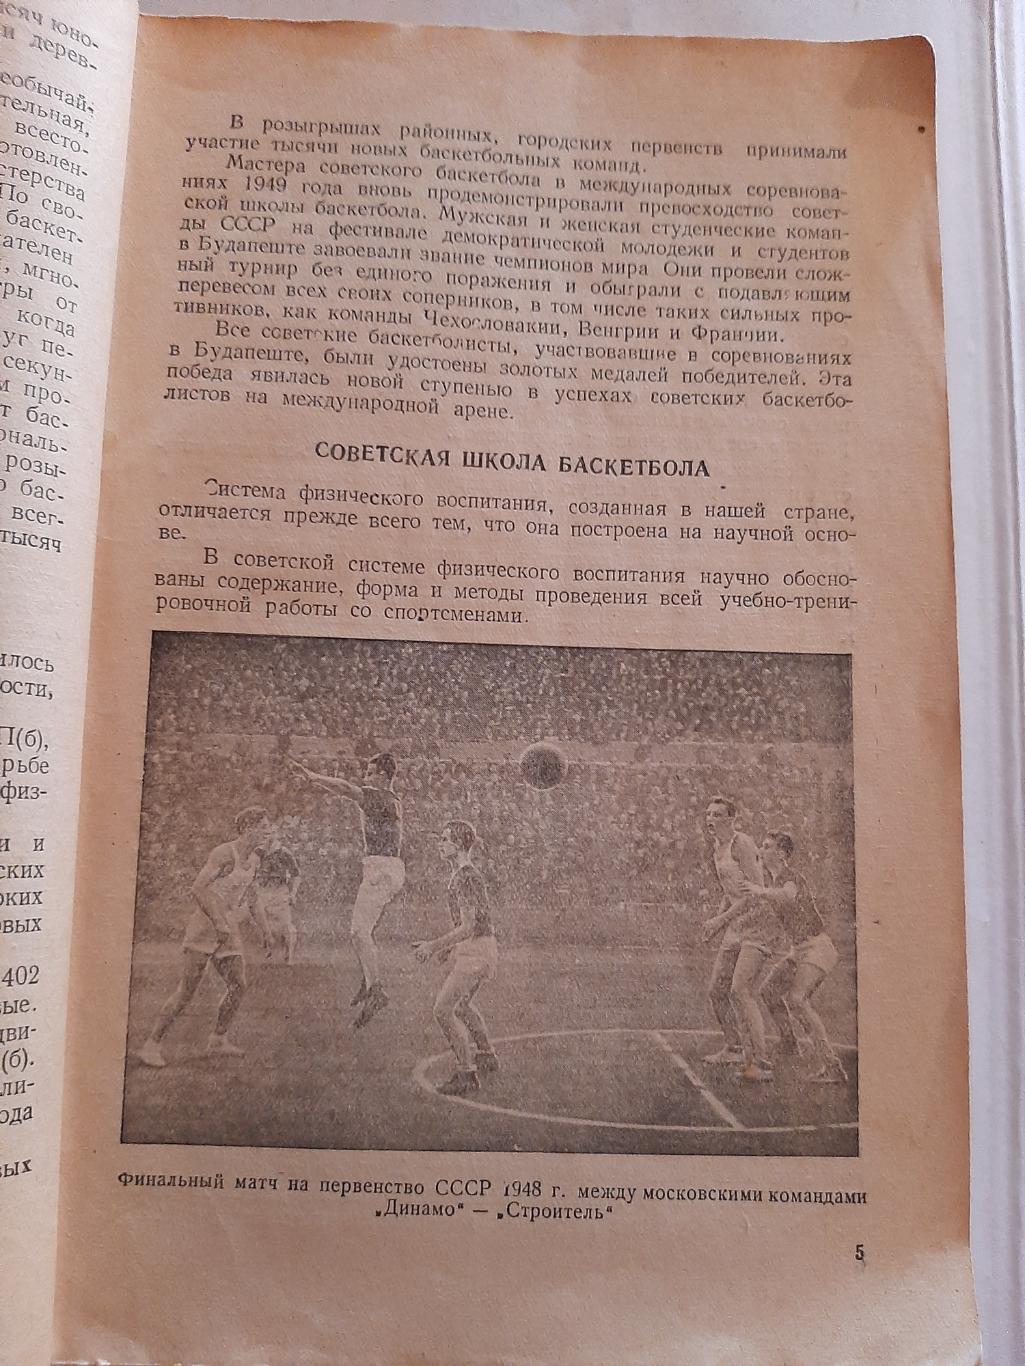 Баскетбол в СССР справочник 1950 ФиС 1